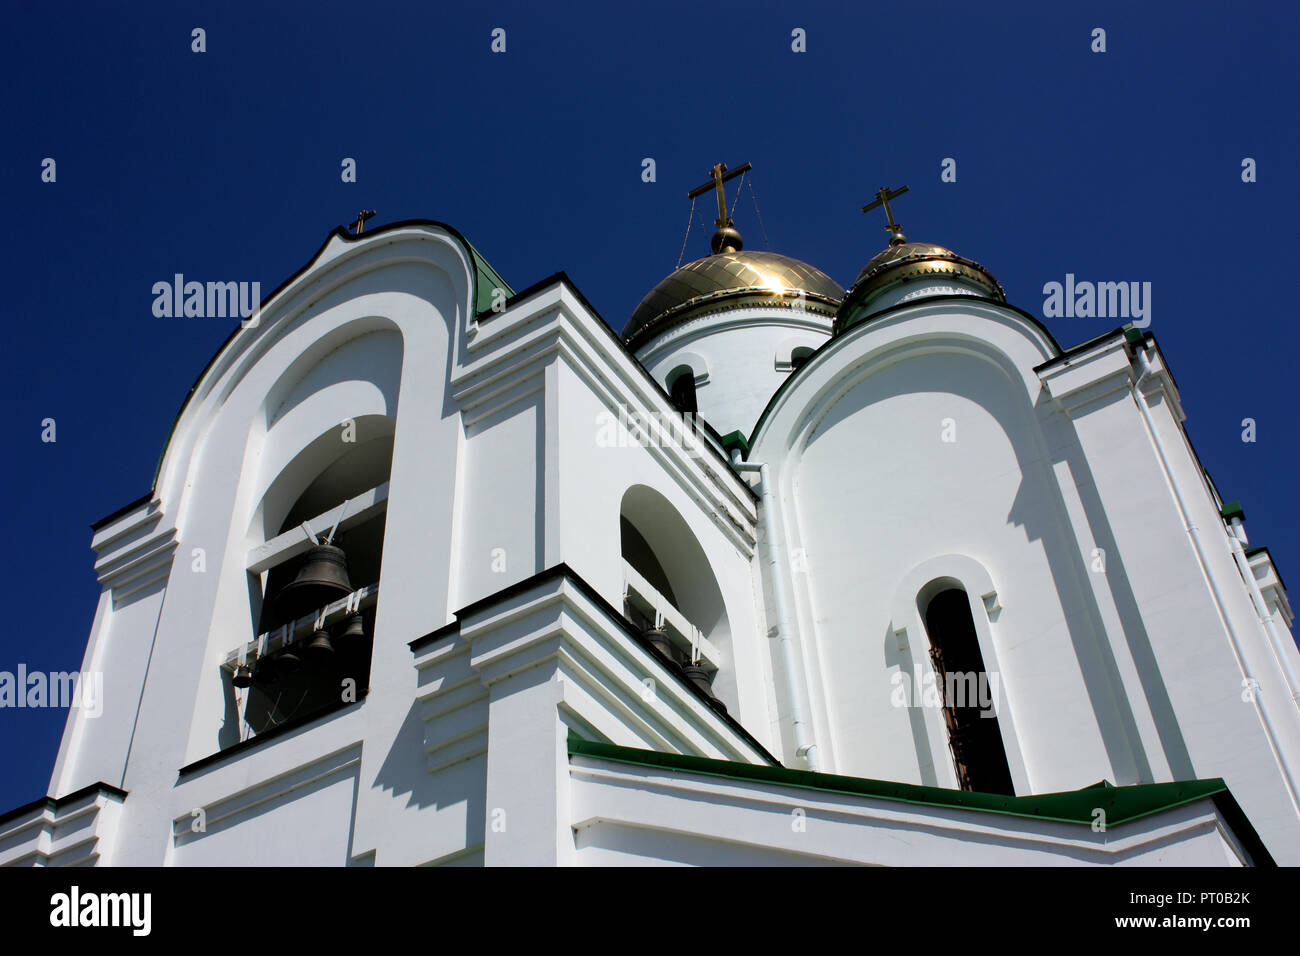 Die Kathedrale, eine Russisch-orthodoxe Kirche, in Tiraspol, Transdniestr Stockfoto